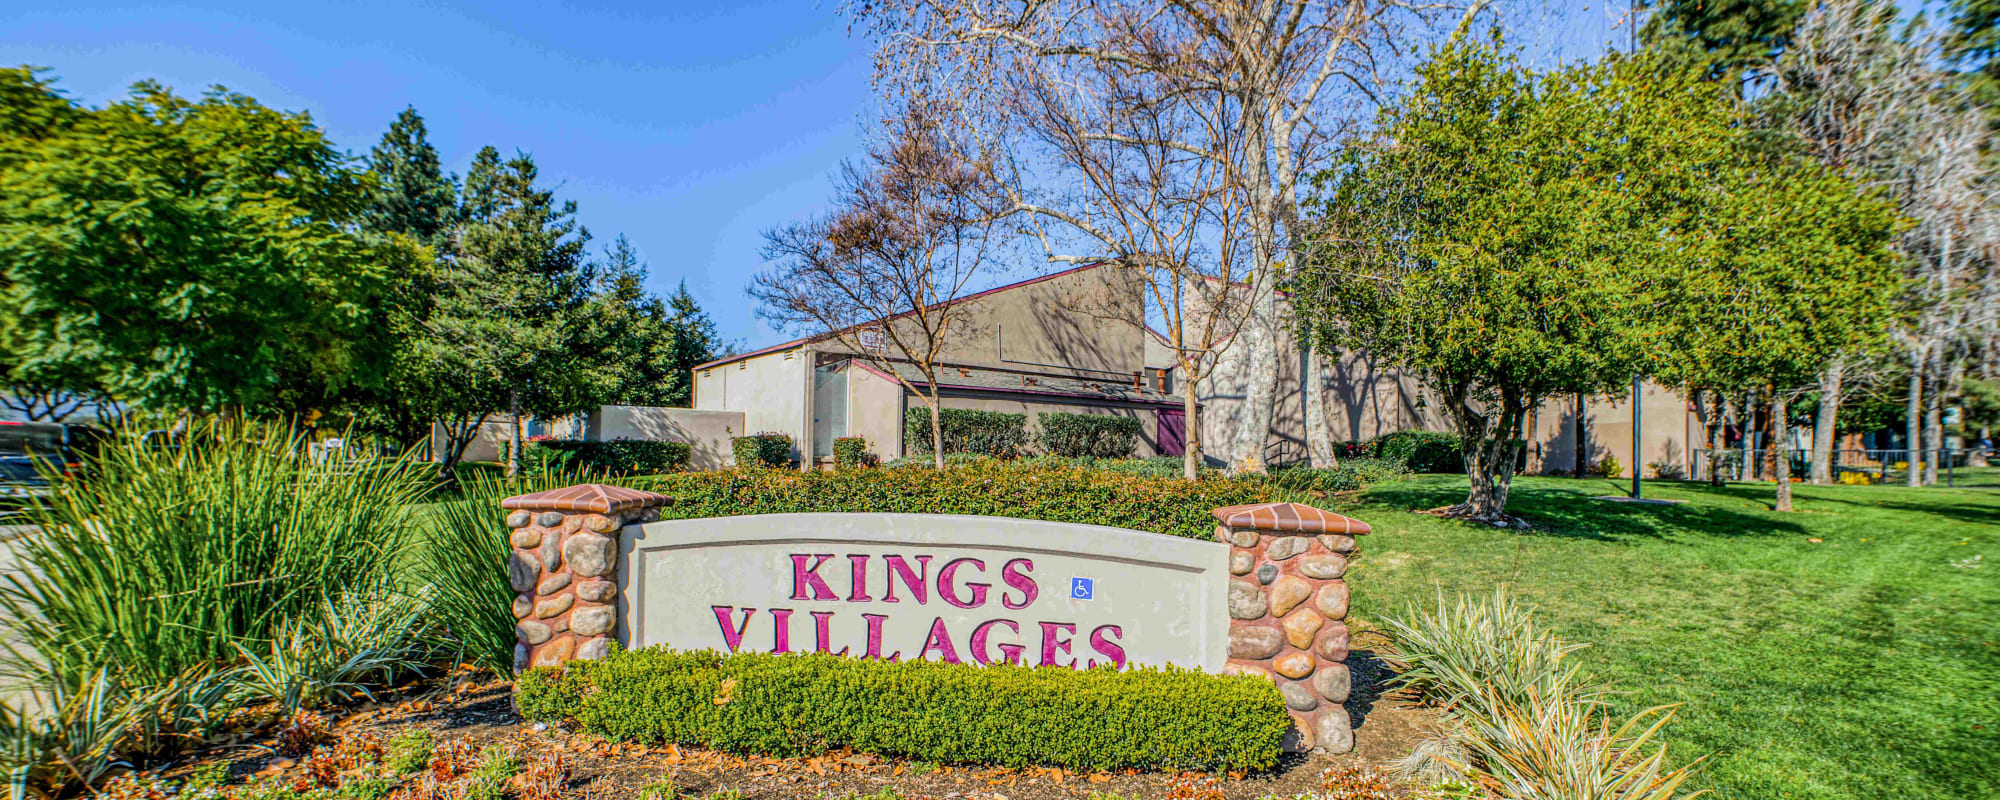 Apartments at Kings Villages in Pasadena, California